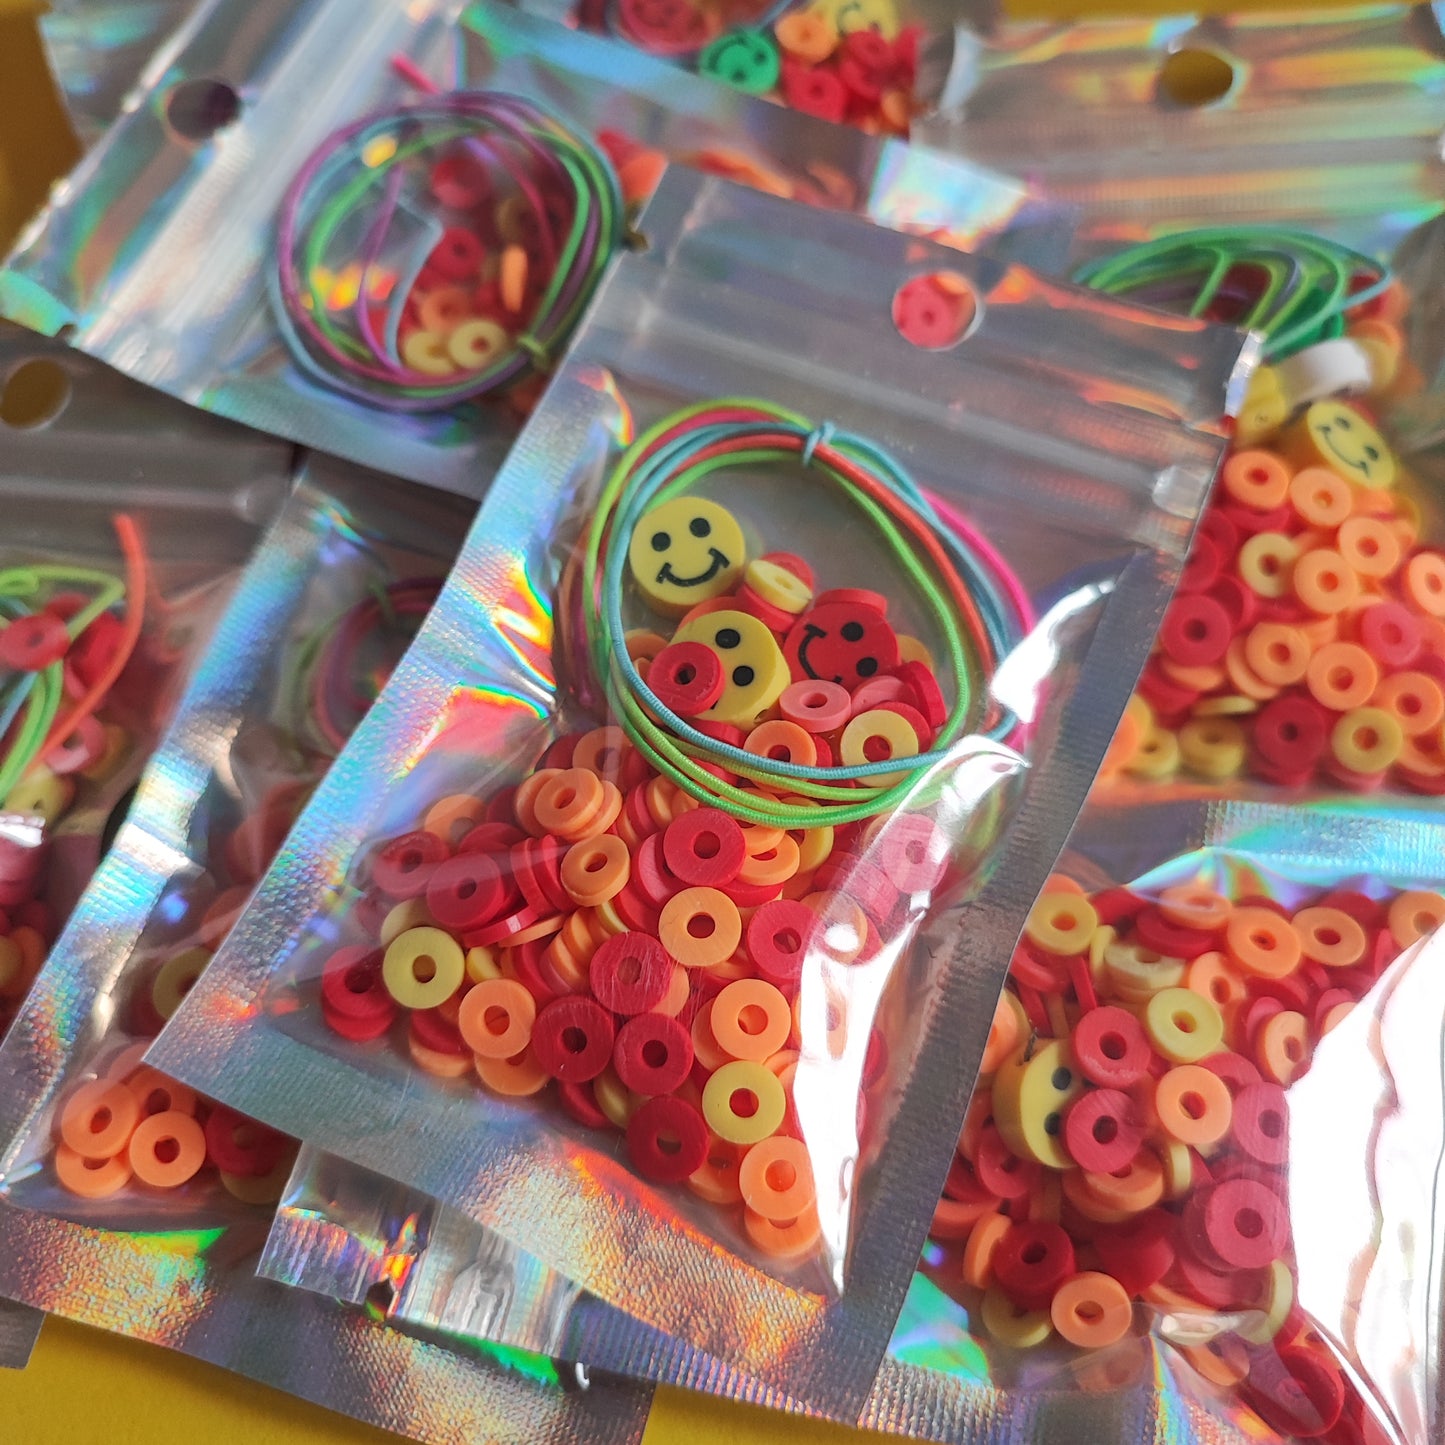 Smiley "Sprinkles" Personalised DIY bracelet kit